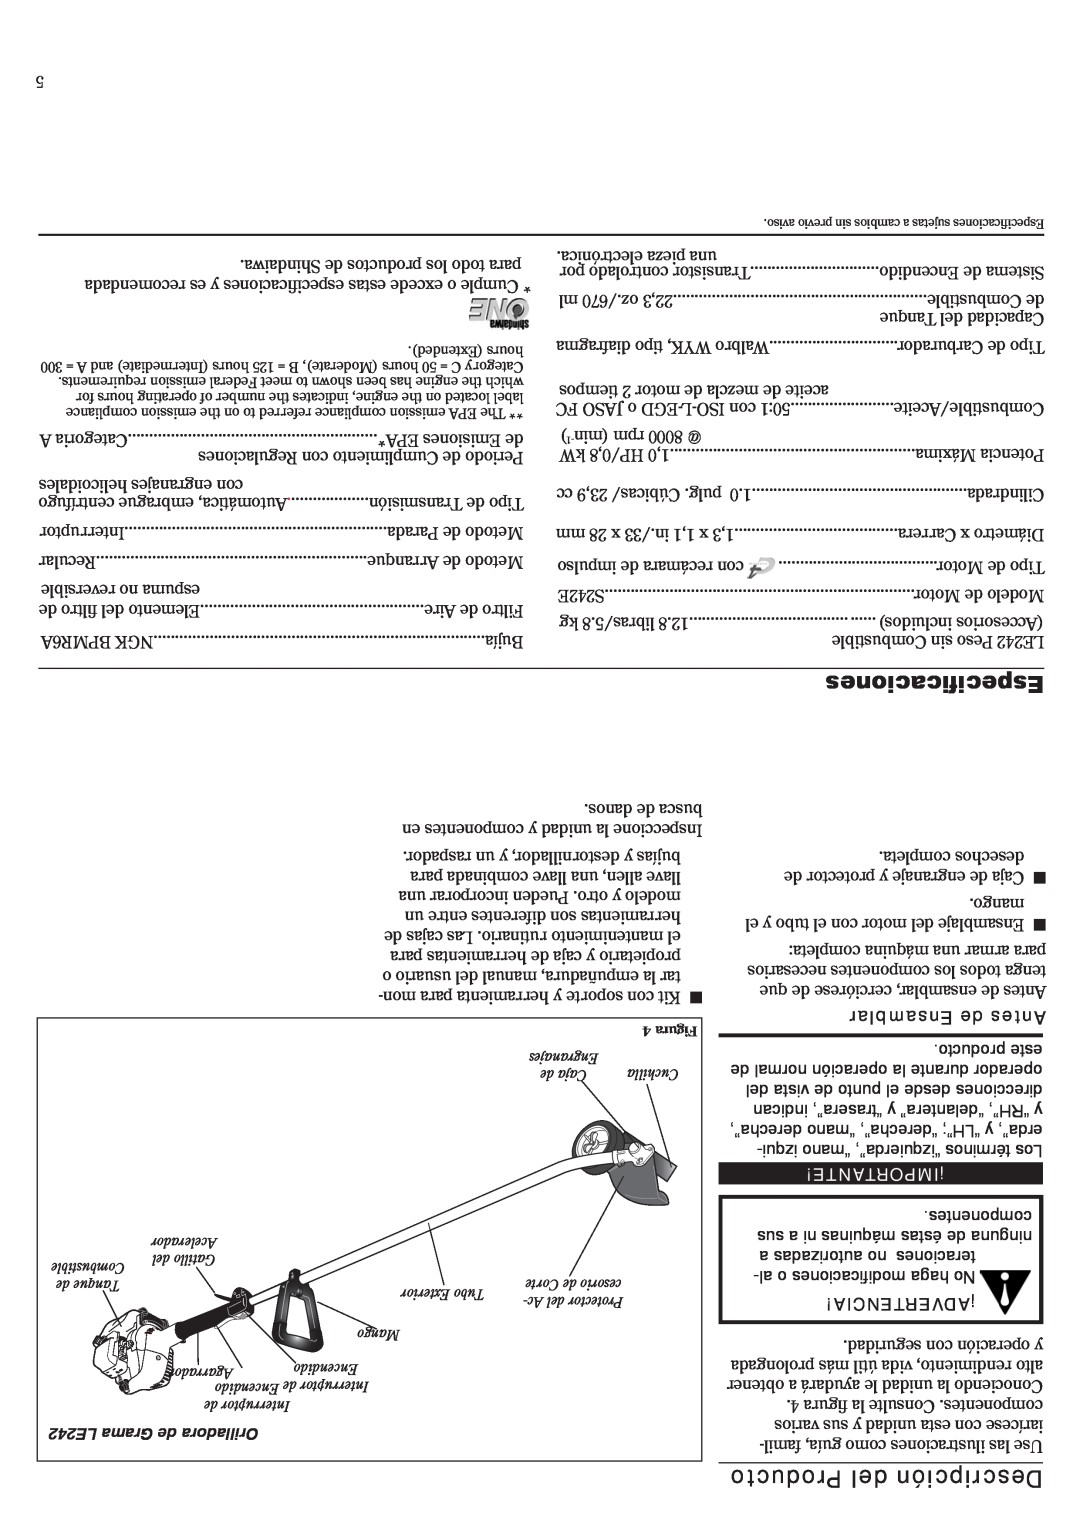 Shindaiwa LE242, 81532 manual Especificaciones, Producto del Descripción, Ensamblar de Antes, Importante!¡, ¡Advertencia 